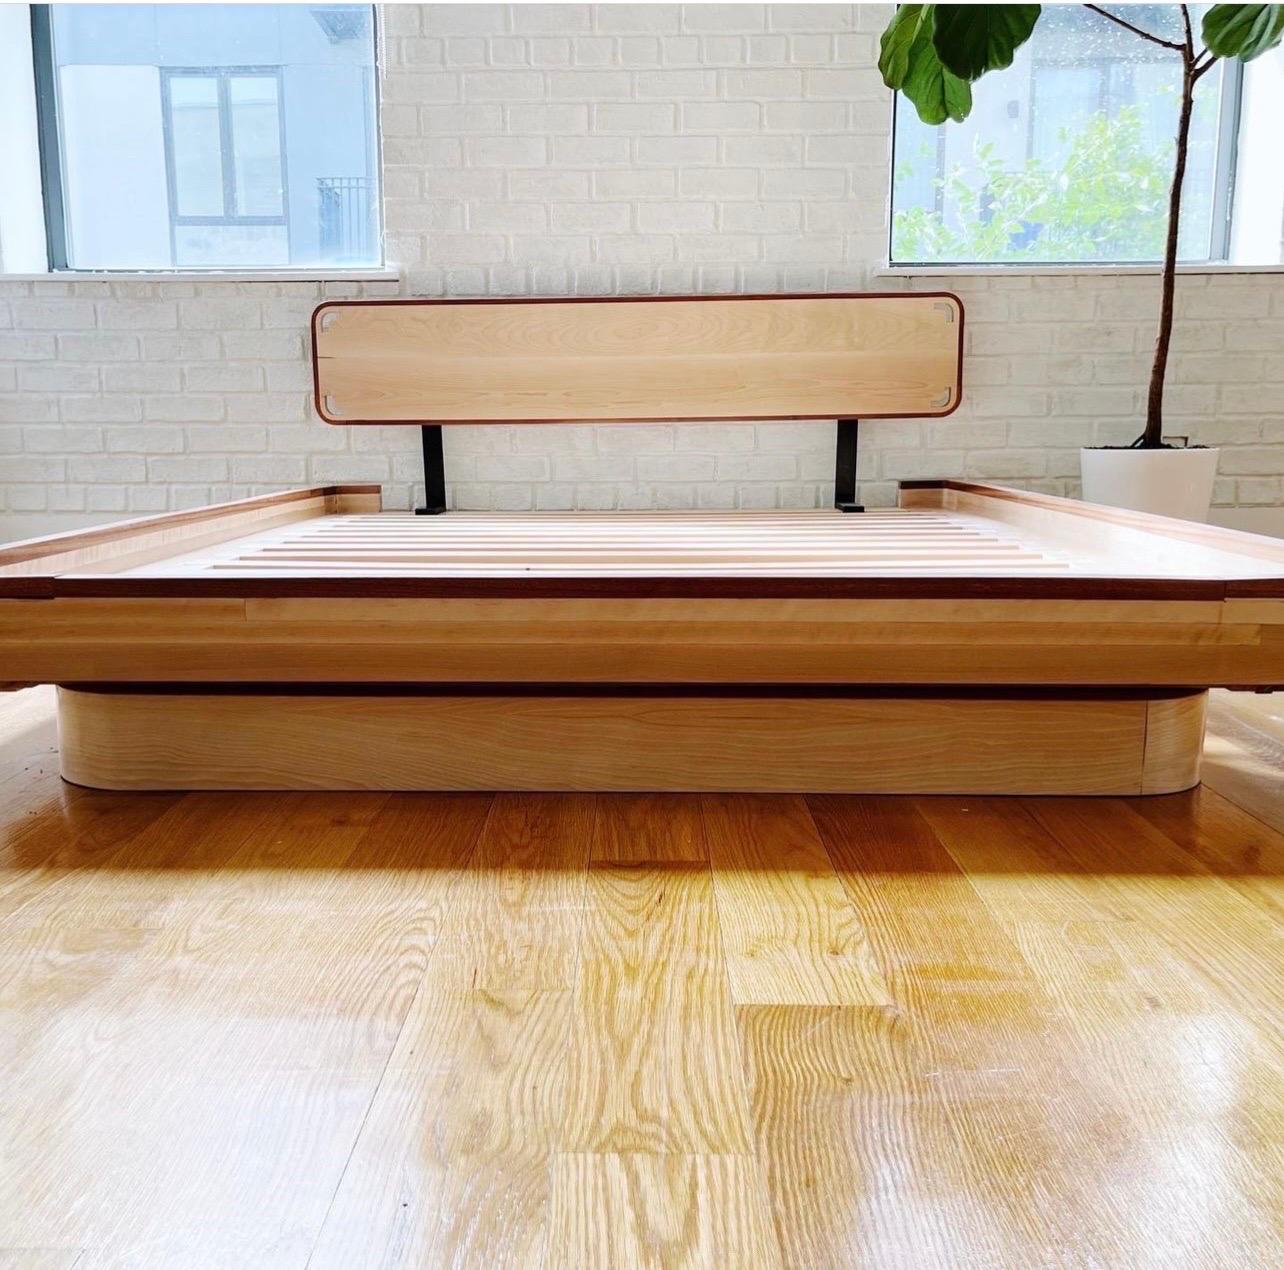 Je suis un designer de meubles basé à Brooklyn. J'ai créé ce lit en pensant à la Nature. Inspiré par les courbes douces que l'on trouve dans la nature. Le lit est substantiel mais pas trop imposant. Il s'agit d'un complément idéal à toute chambre à